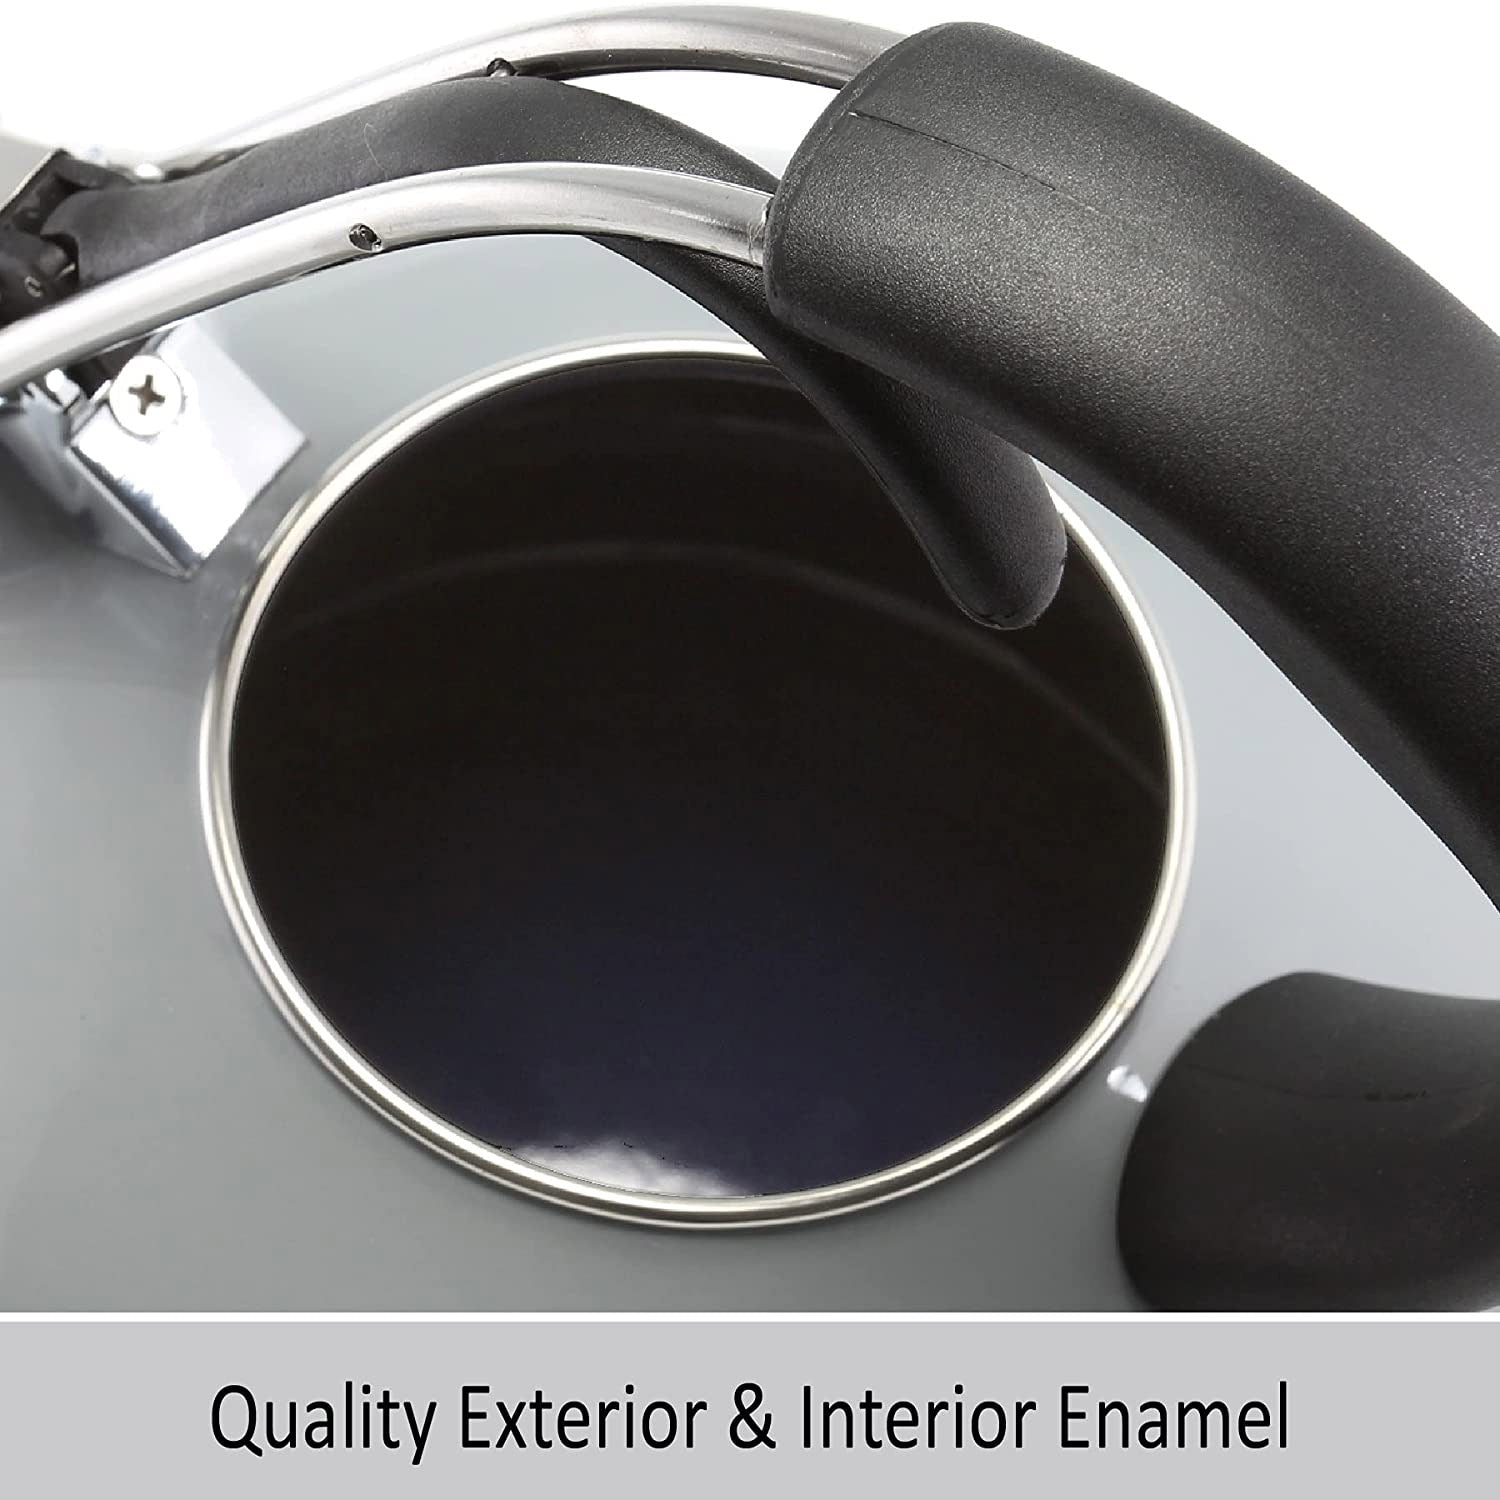 Enamel-on-Steel Classic Teakettle (1.8 Qt.) – Chantal